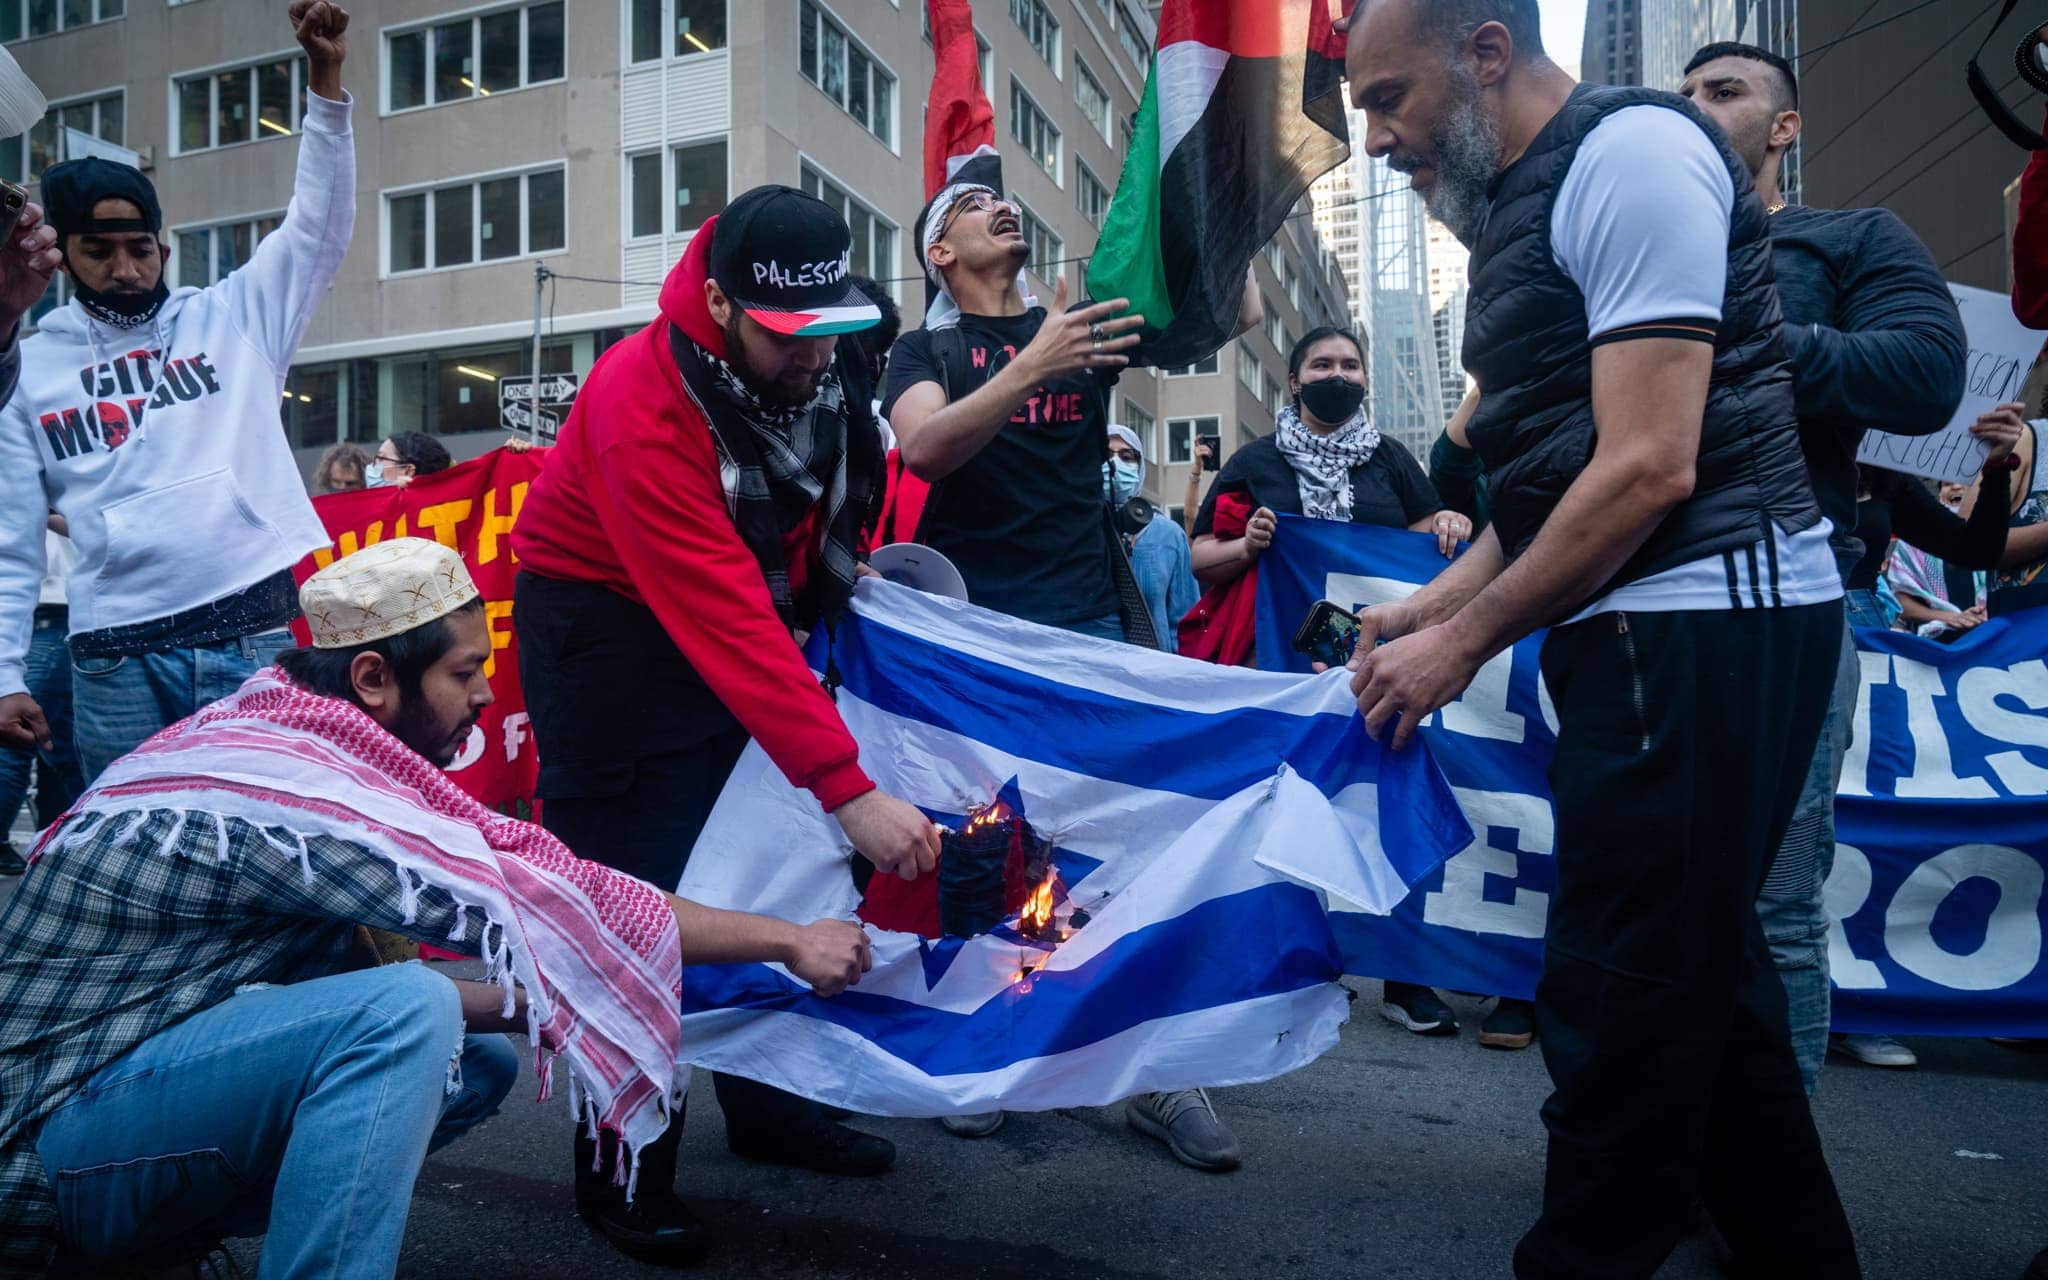 פעילים אנט־ישראלים ופרו־פלסטינים שורפים את דגל ישראל בניו יורק, 15 במאי 2021 (צילום: לוק טרס)